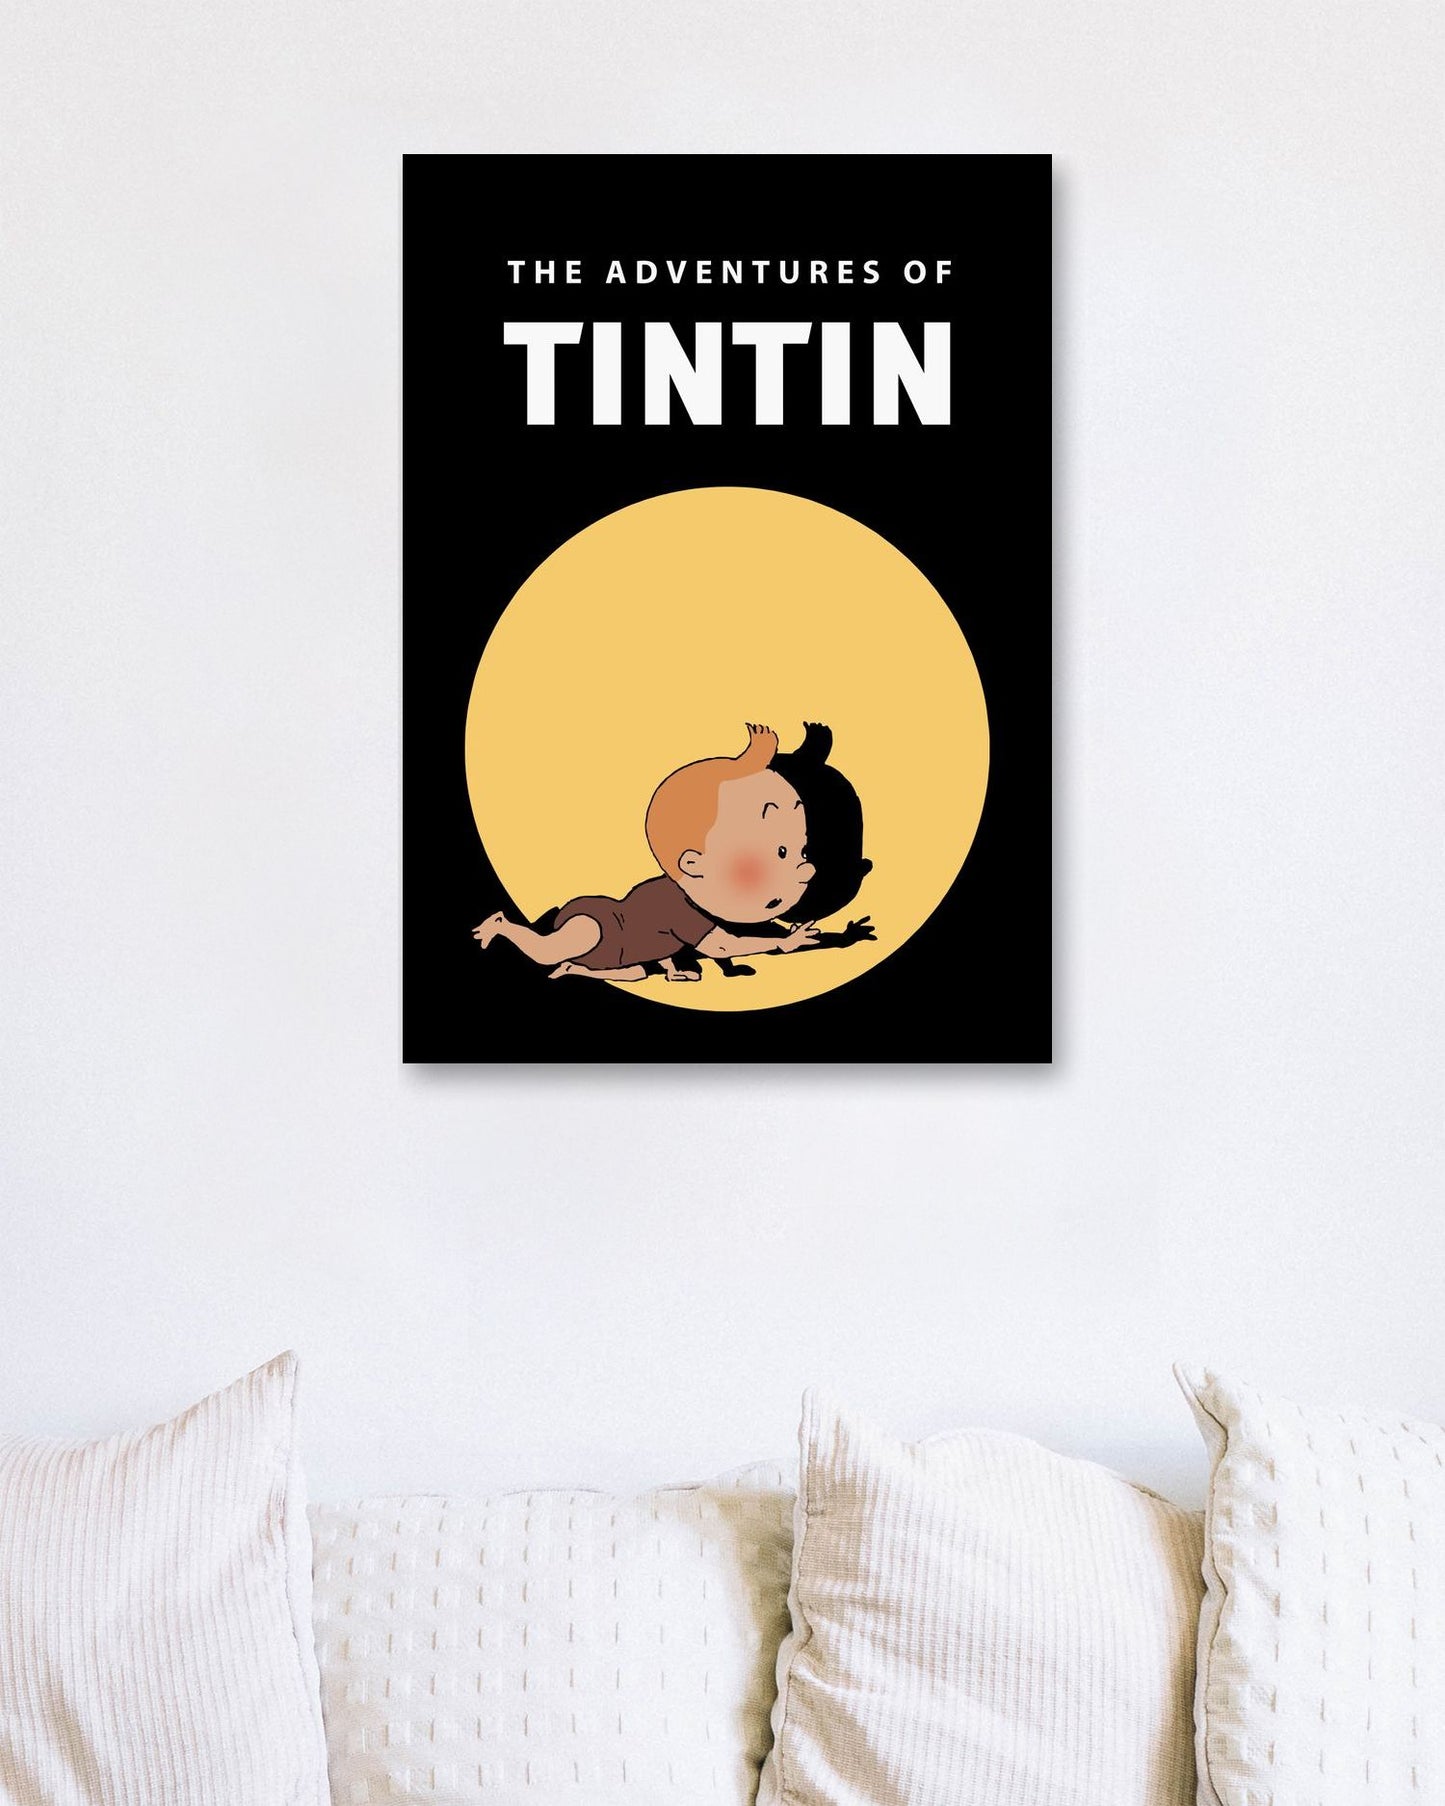 baby tintin - @pansodda